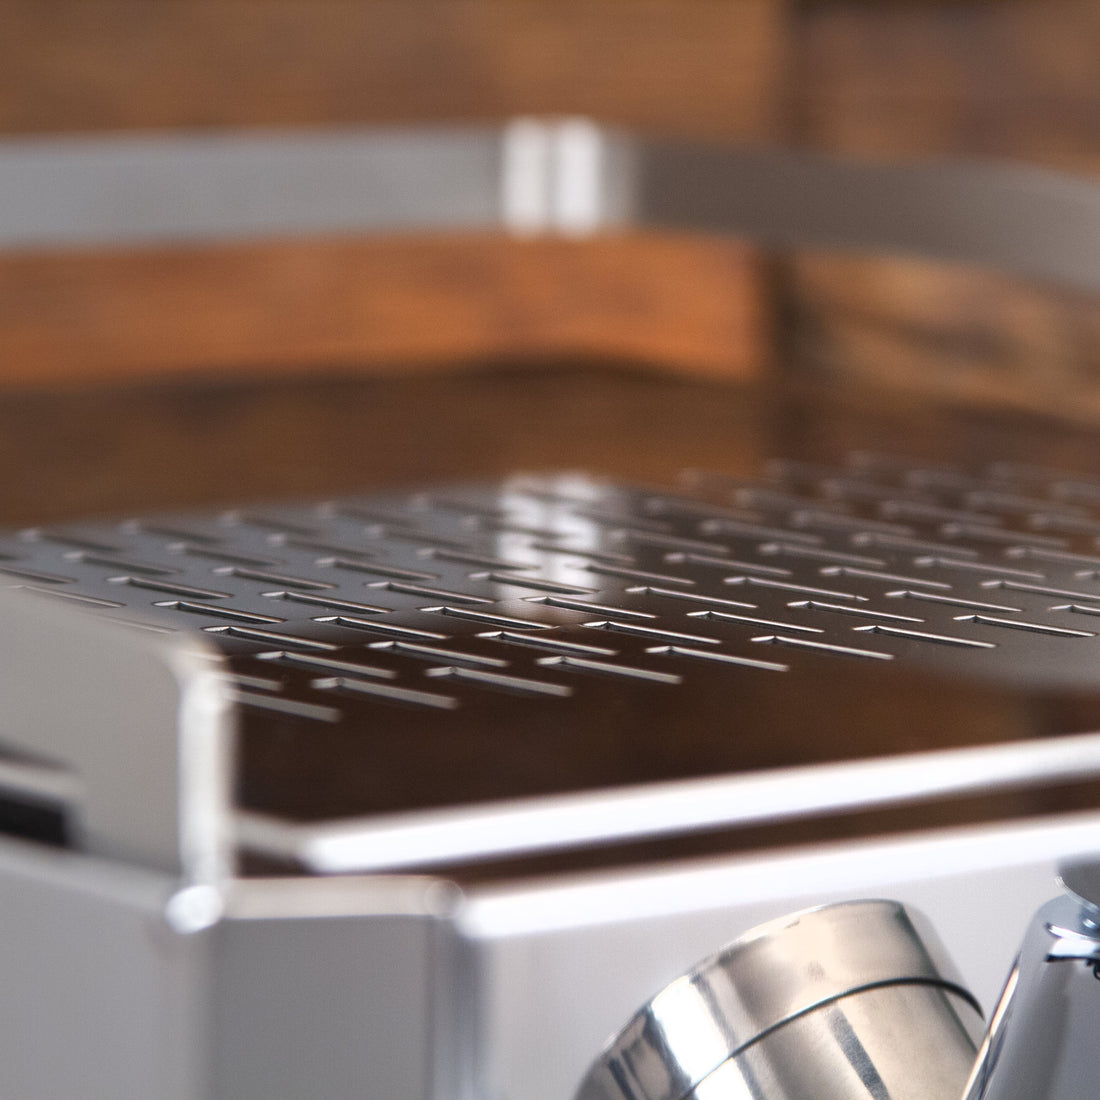 Pathfinder Heat Exchanger Espresso Machine with Flow Control